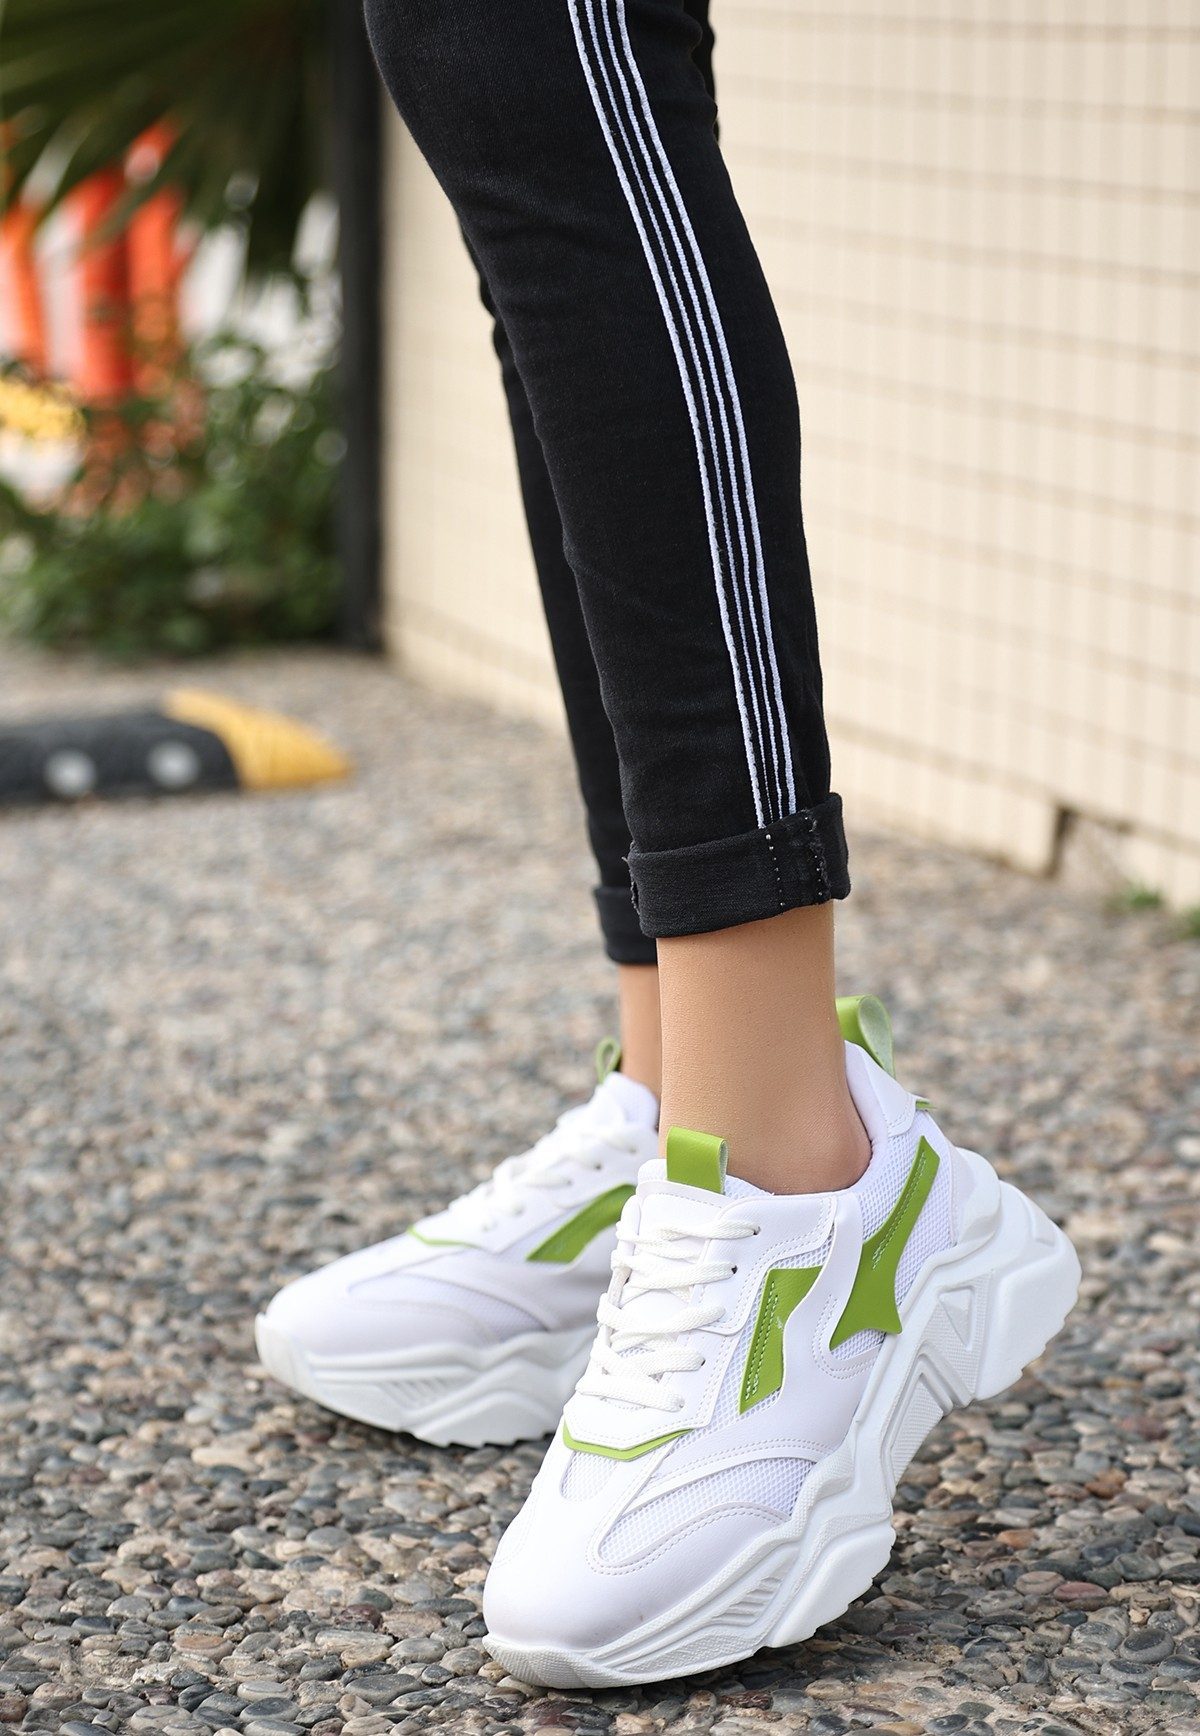 CLZ943 Beyaz Cilt Yeşil Detaylı Bağcıklı Spor Ayakkabı